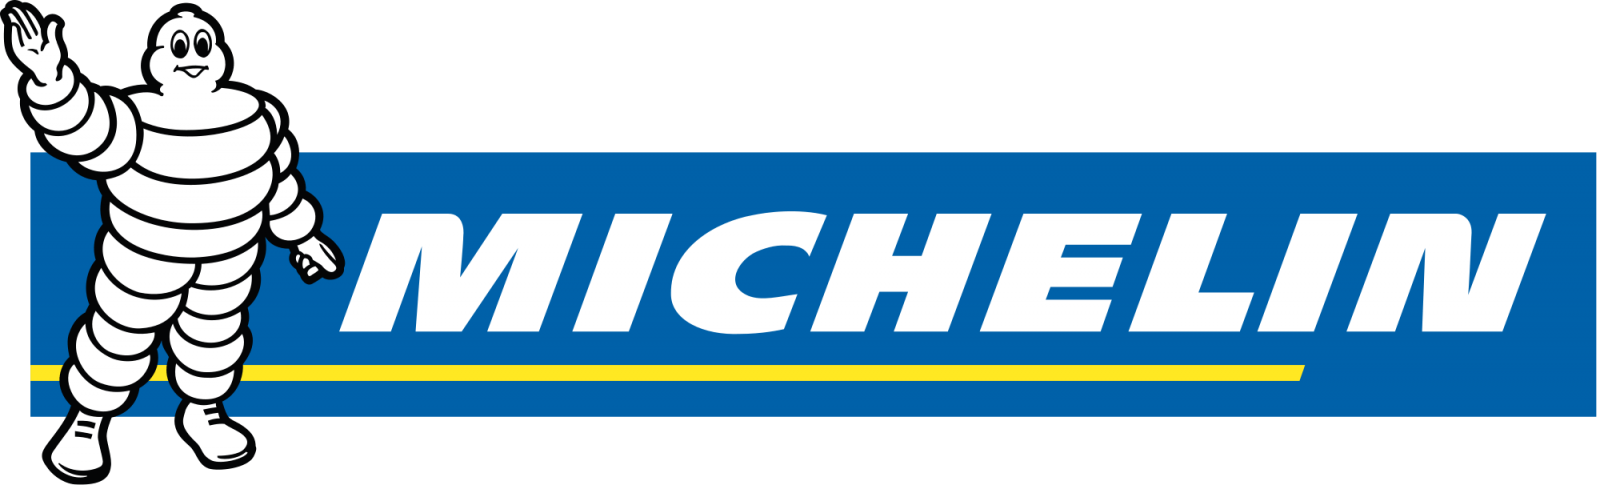 Michelin banden